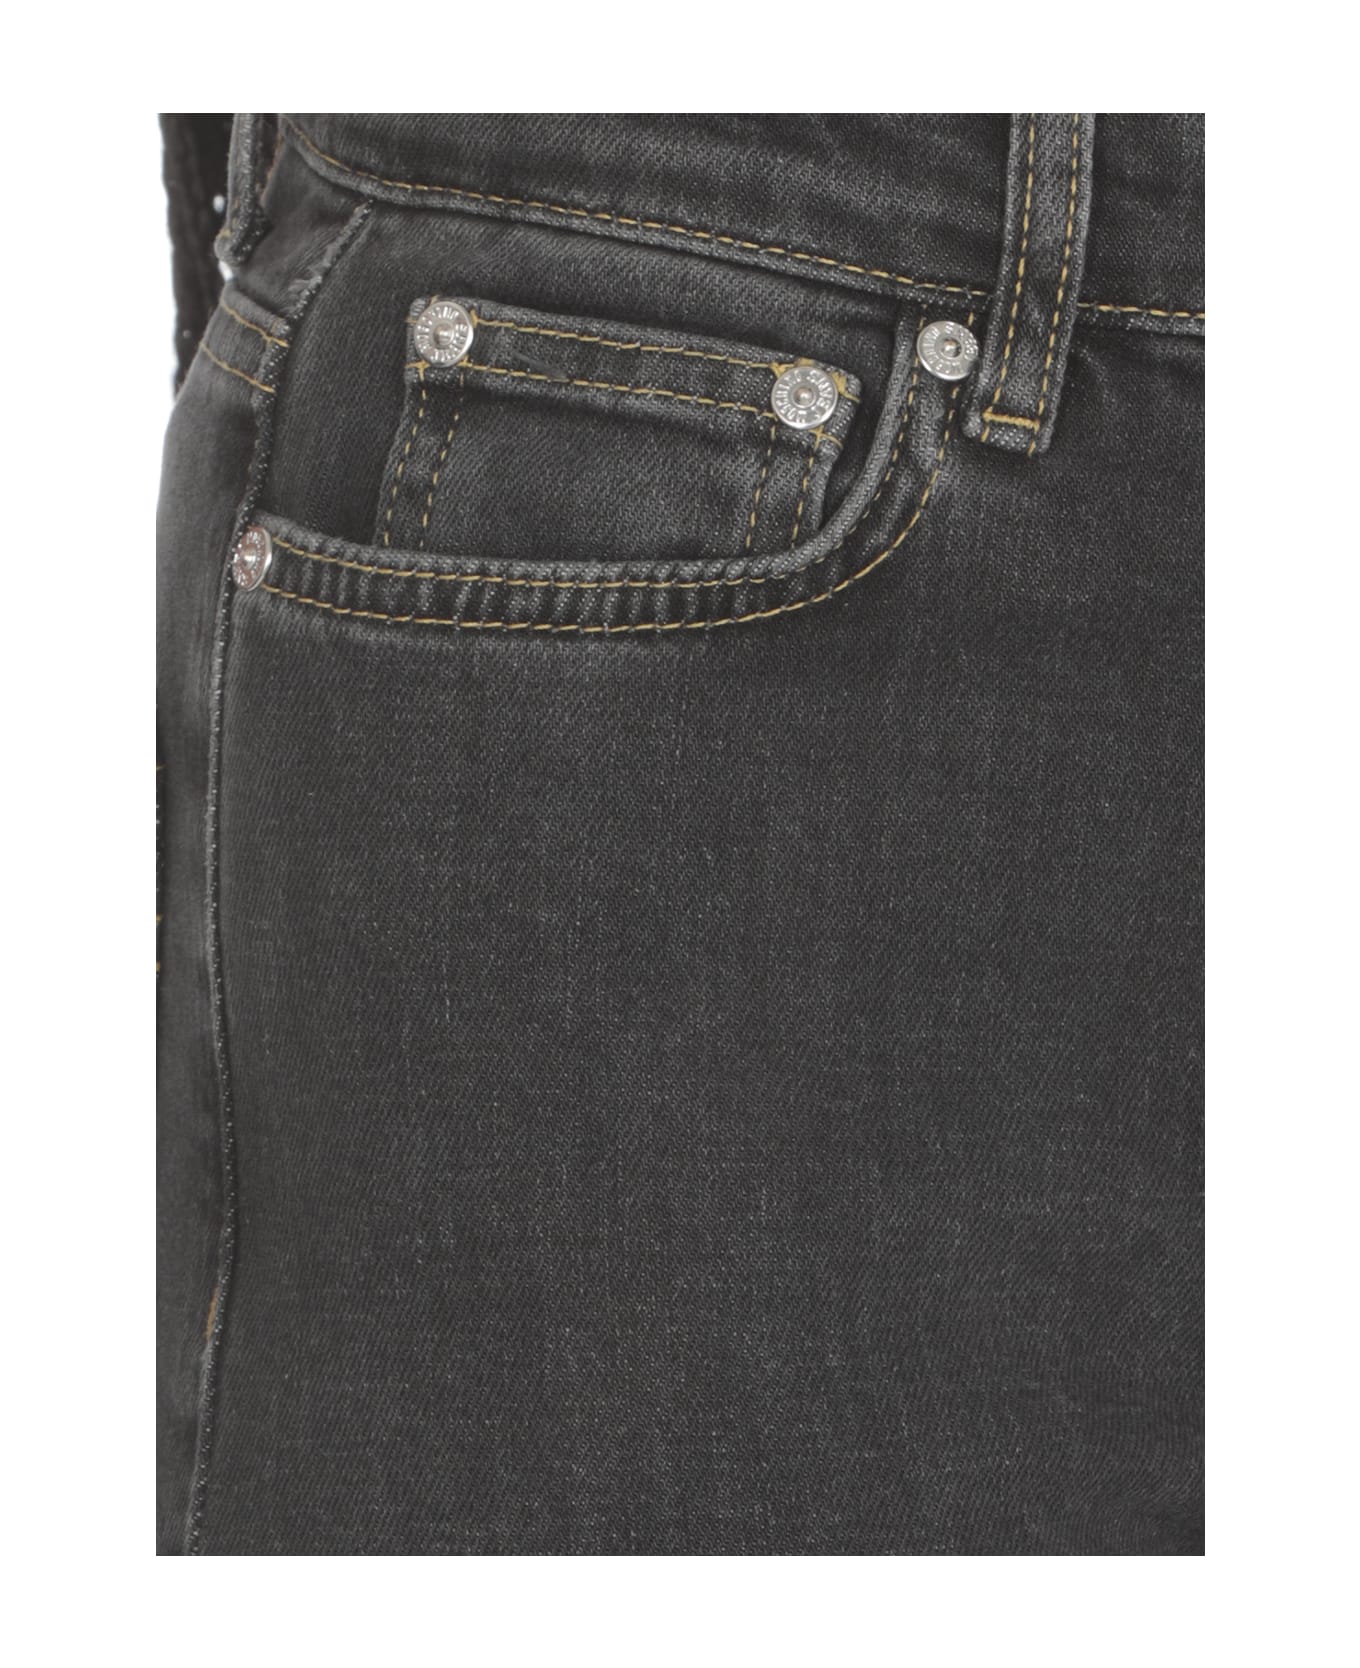 M05CH1N0 Jeans Cotton Jeans - Black